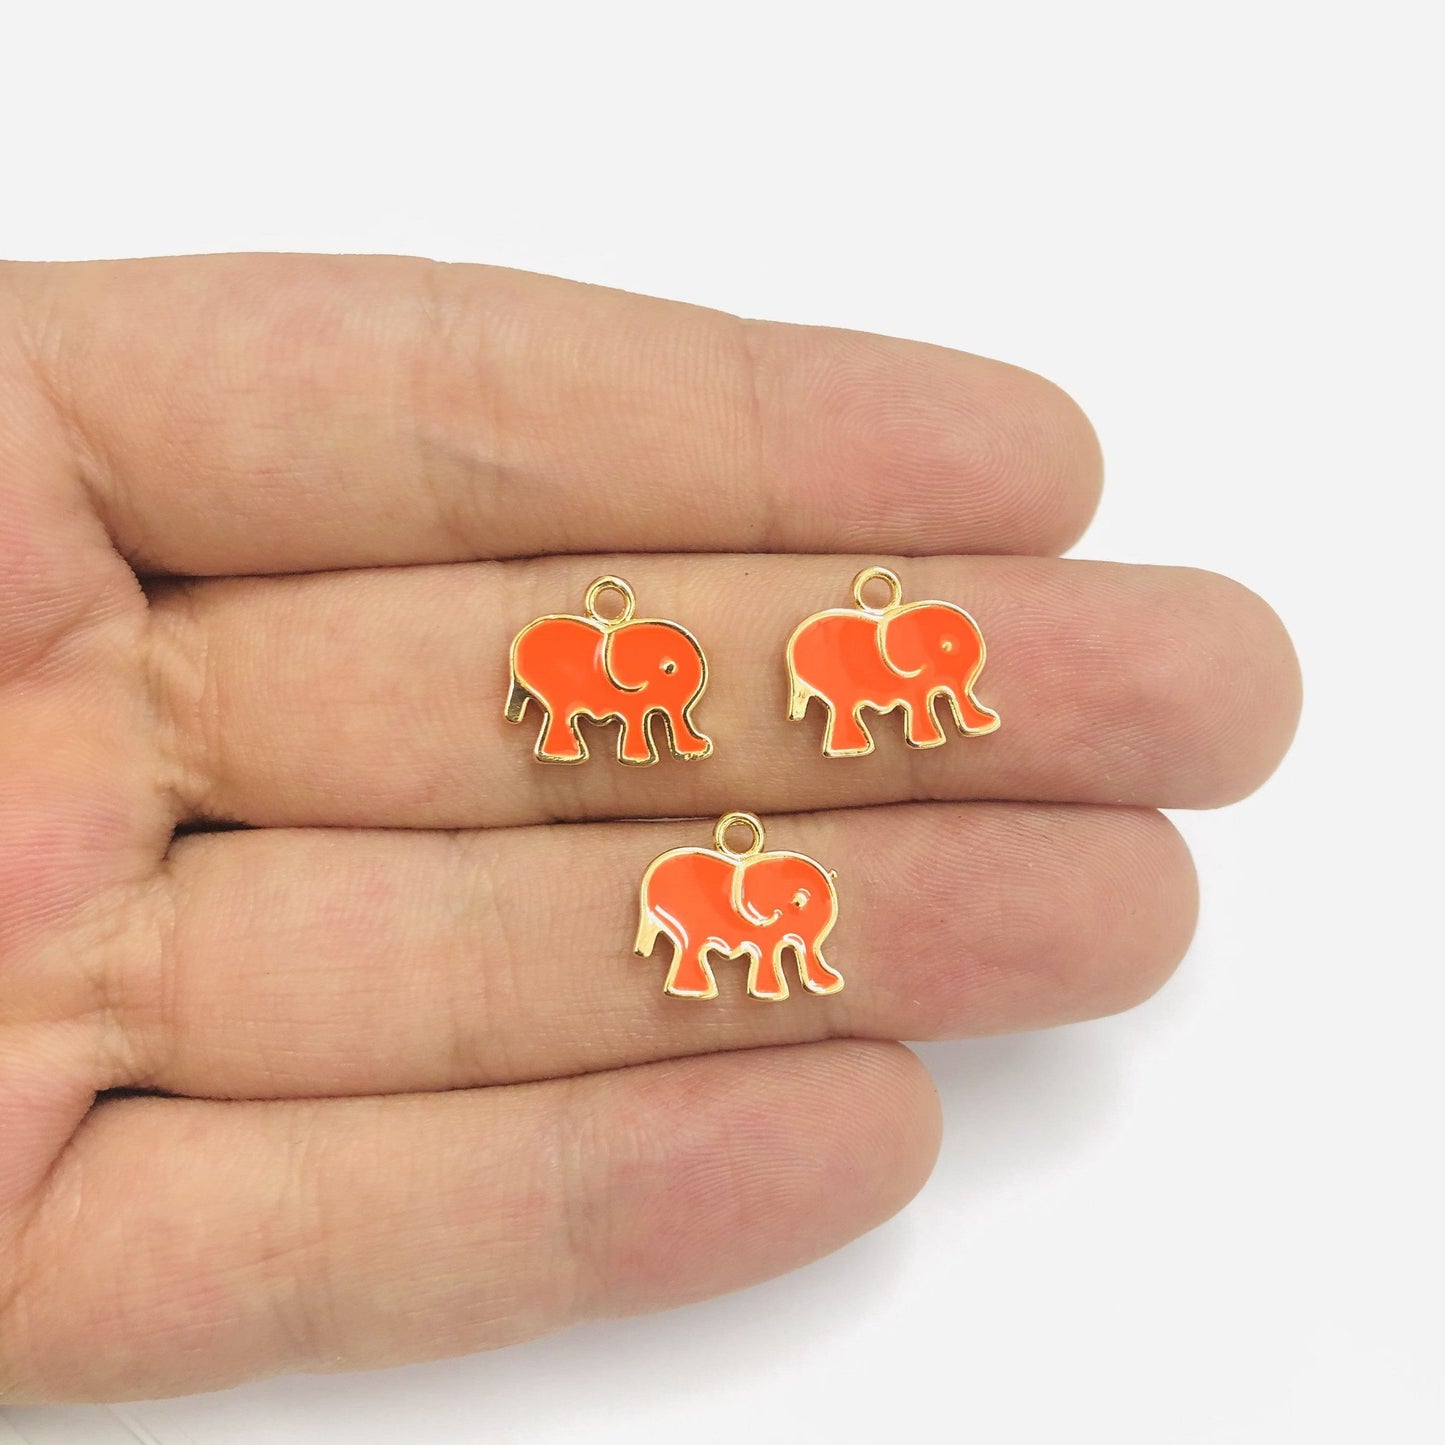 Vergoldete, emaillierte Elefanten-Schaukelhalterung – Neonorange